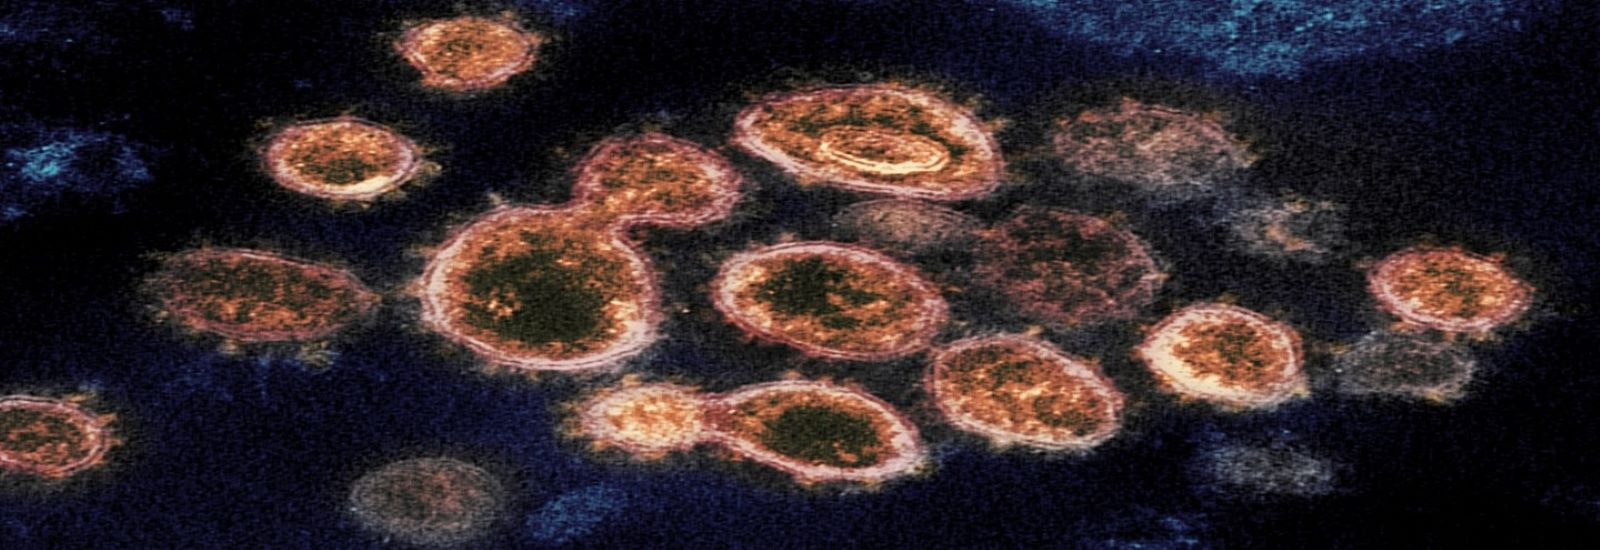 coronavirus2.jpg